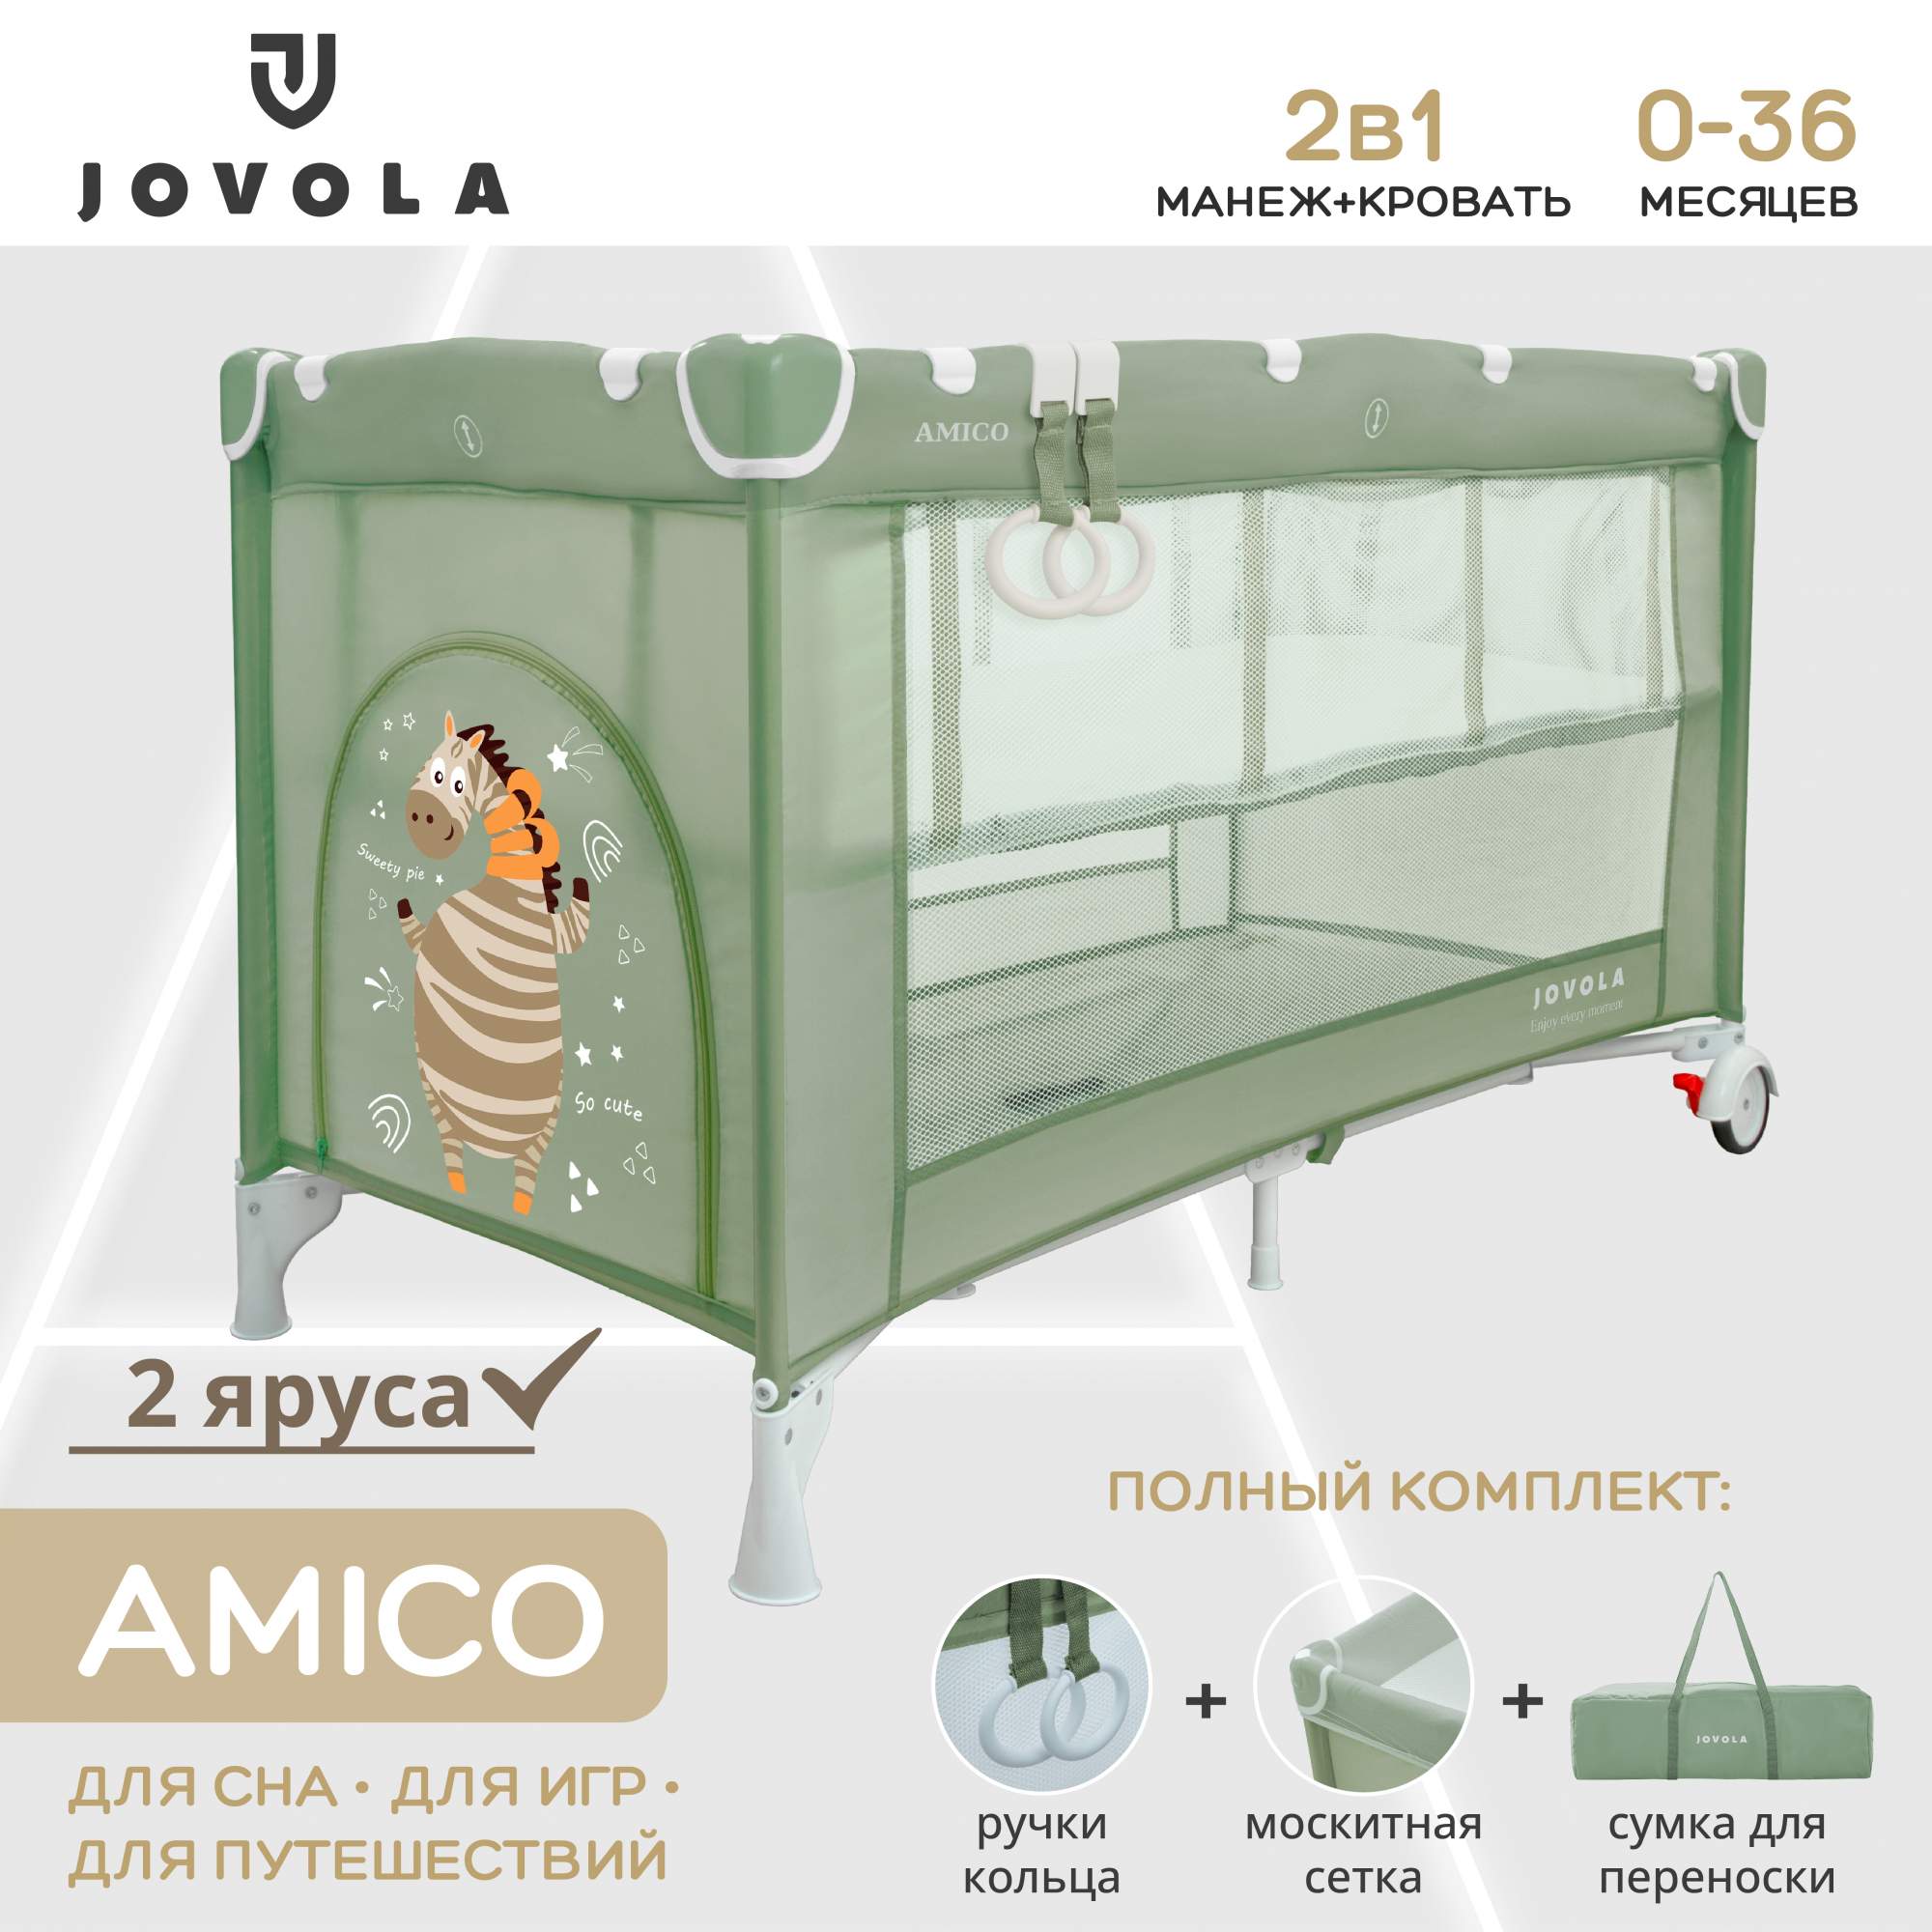 Манеж кровать детский JOVOLA AMICO для новорожденных складной 2 уровня зеленый манеж кровать hauck sleep n play go plus beige складной с матрасом лазом и 2 колесами